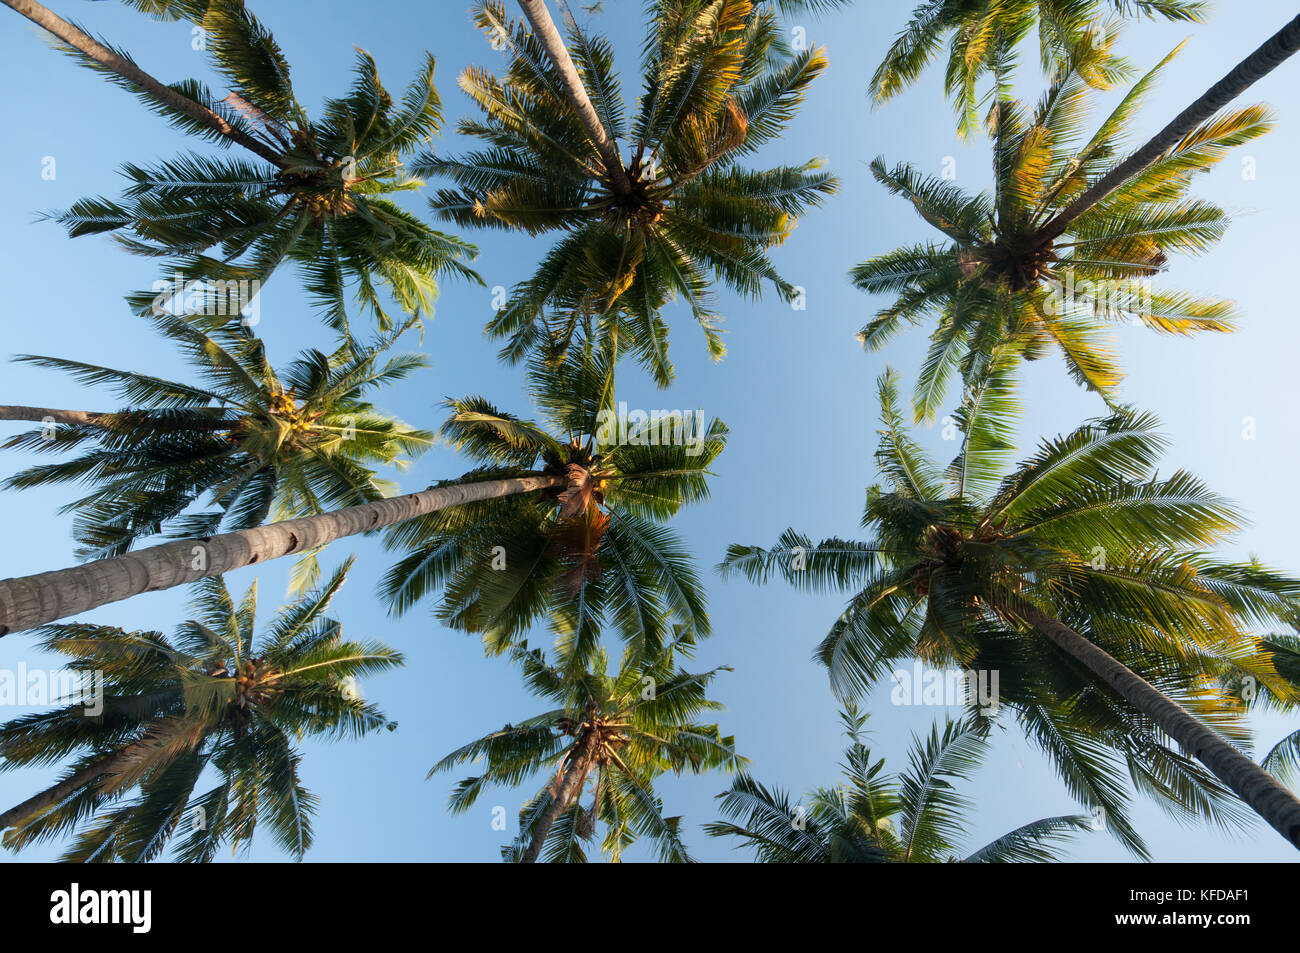 Image de palmiers prises sur l'île de Gili Air, Lombok, Indonésie Banque D'Images